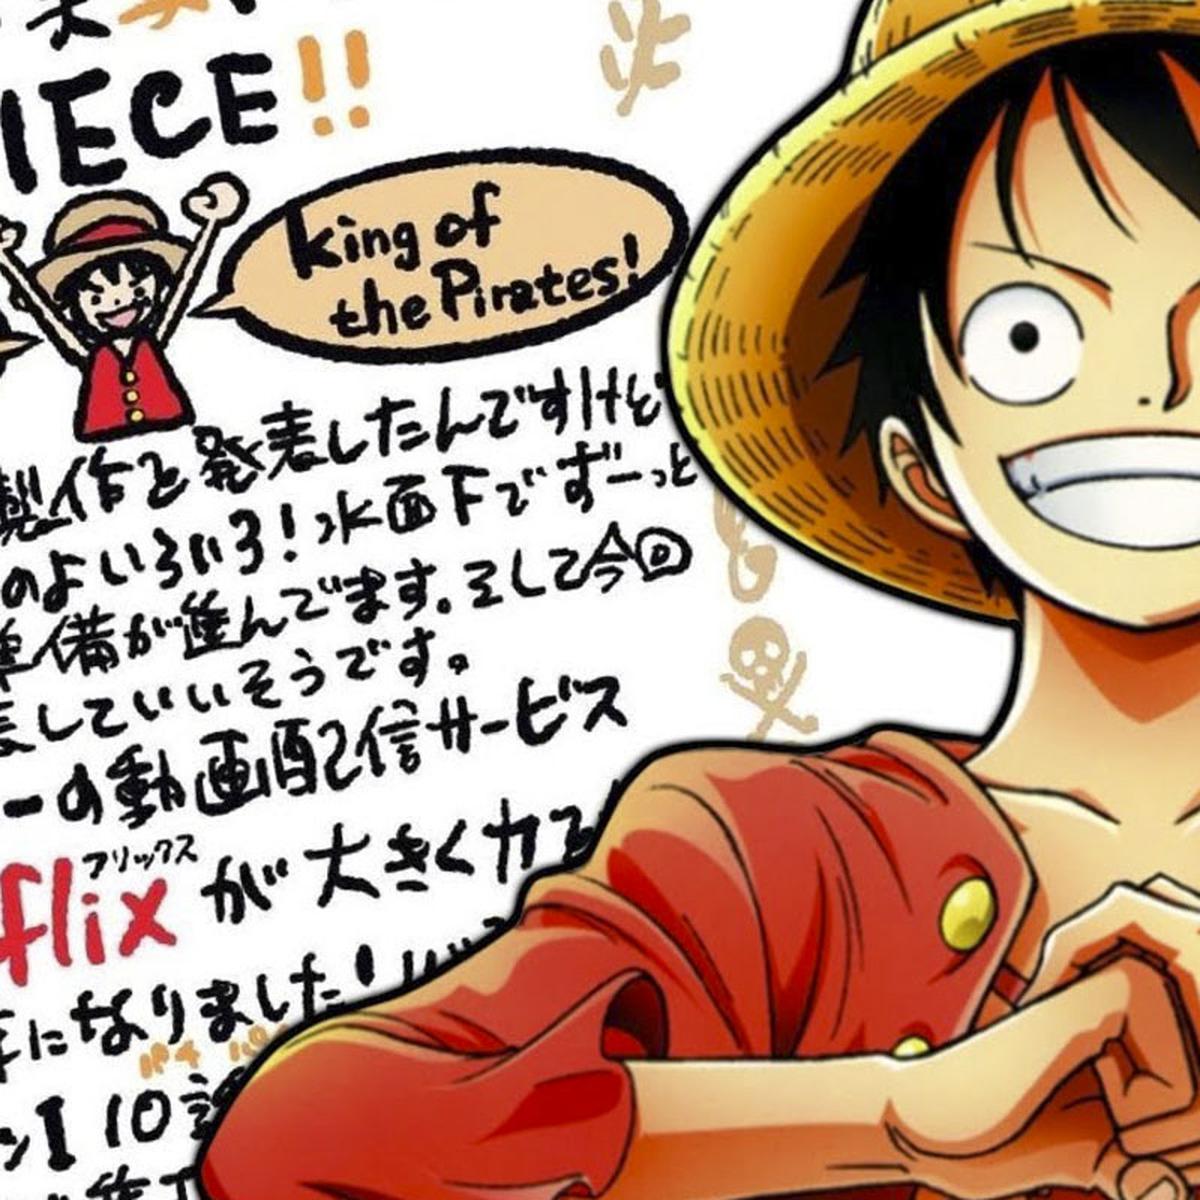 One Piece: Netflix anuncia la llegada de nuevos episodios del anime – ANMTV